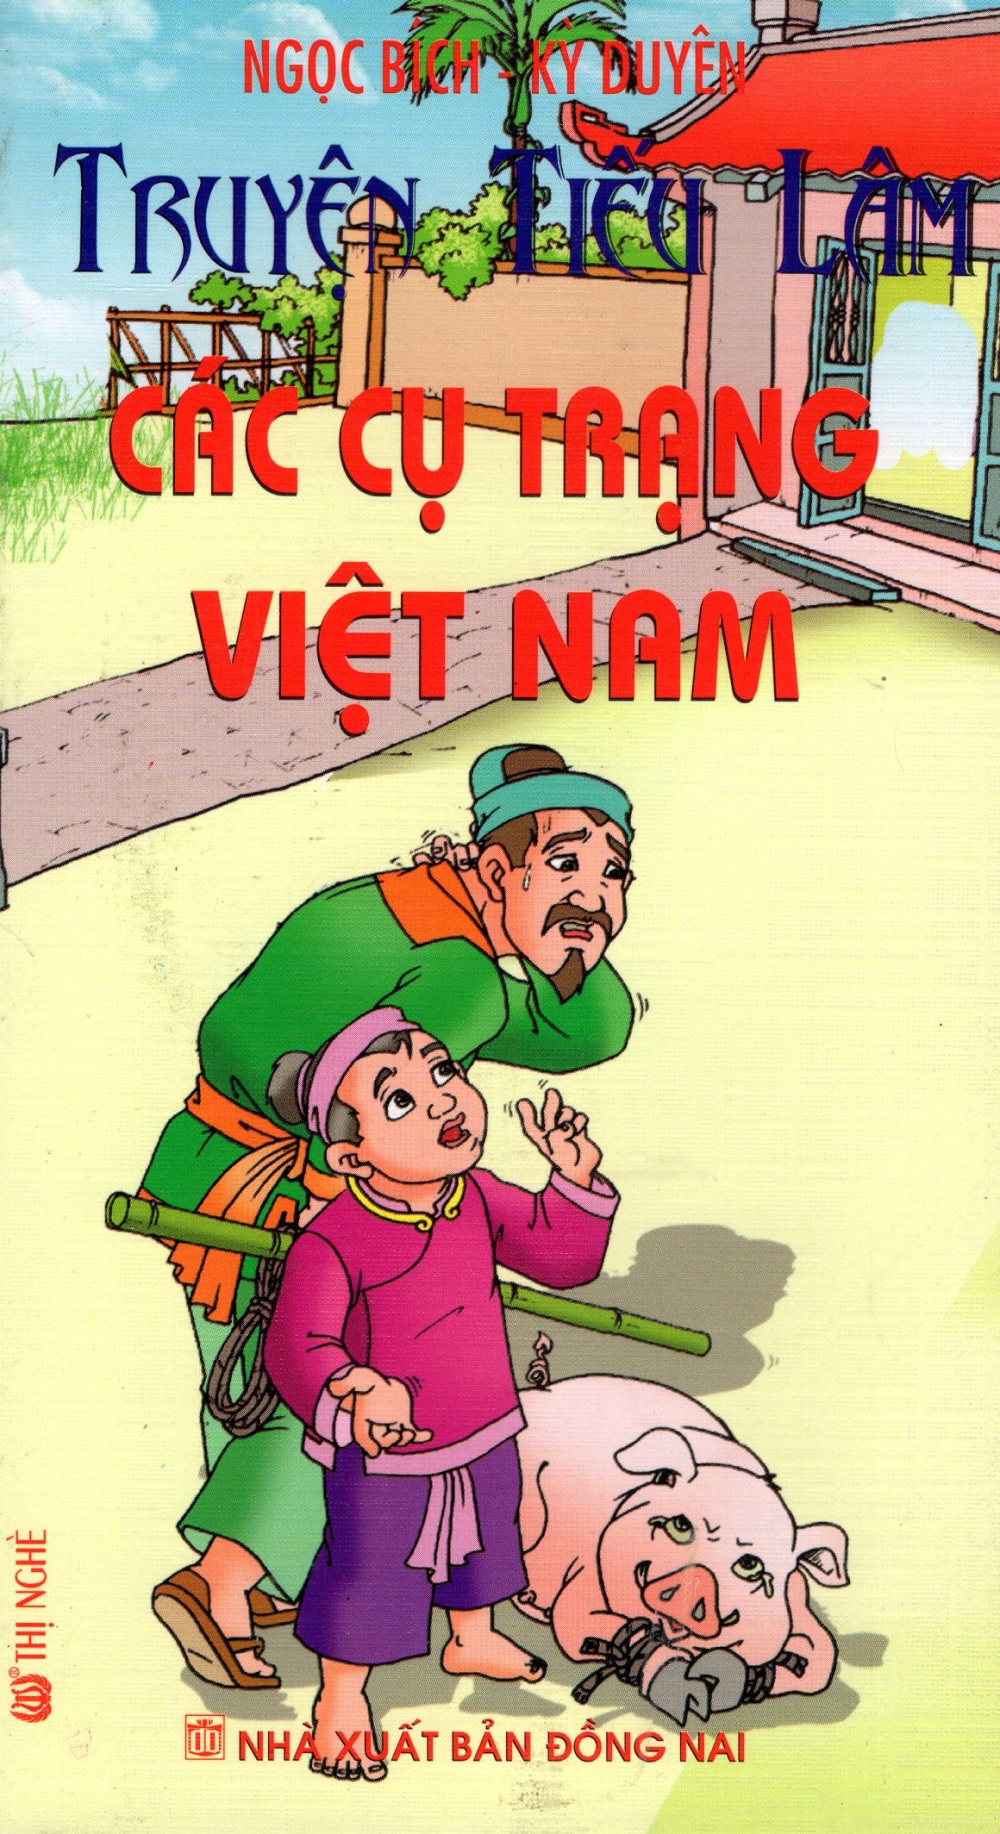 Truyện Tiếu Lâm: Các Cụ Trạng Việt Nam